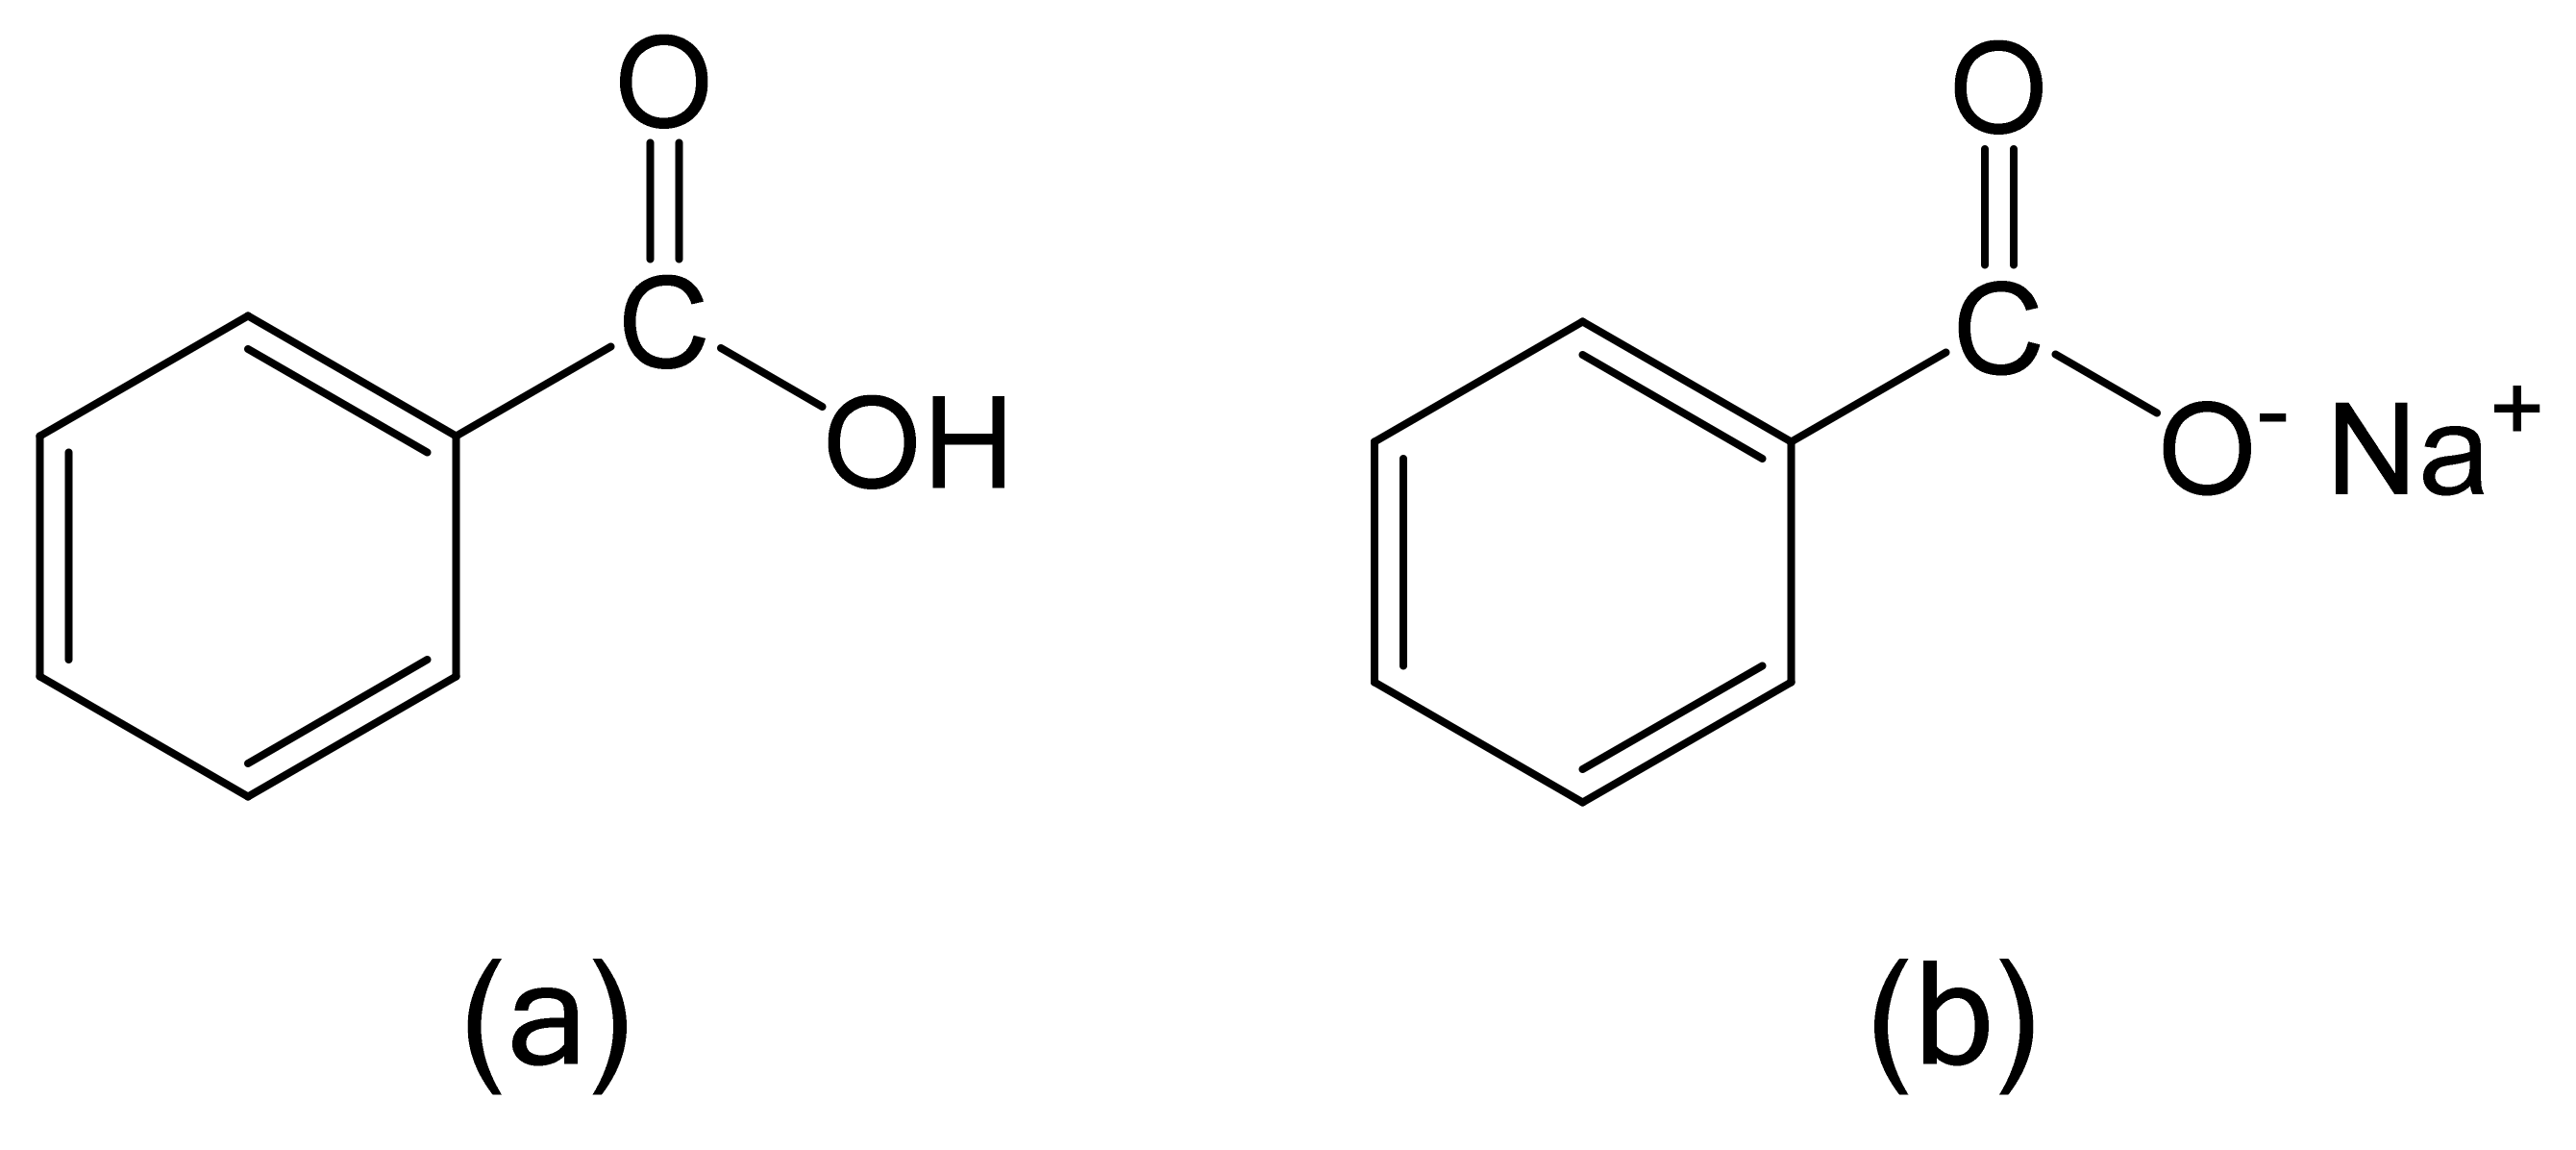 sodium benzoate acid or base